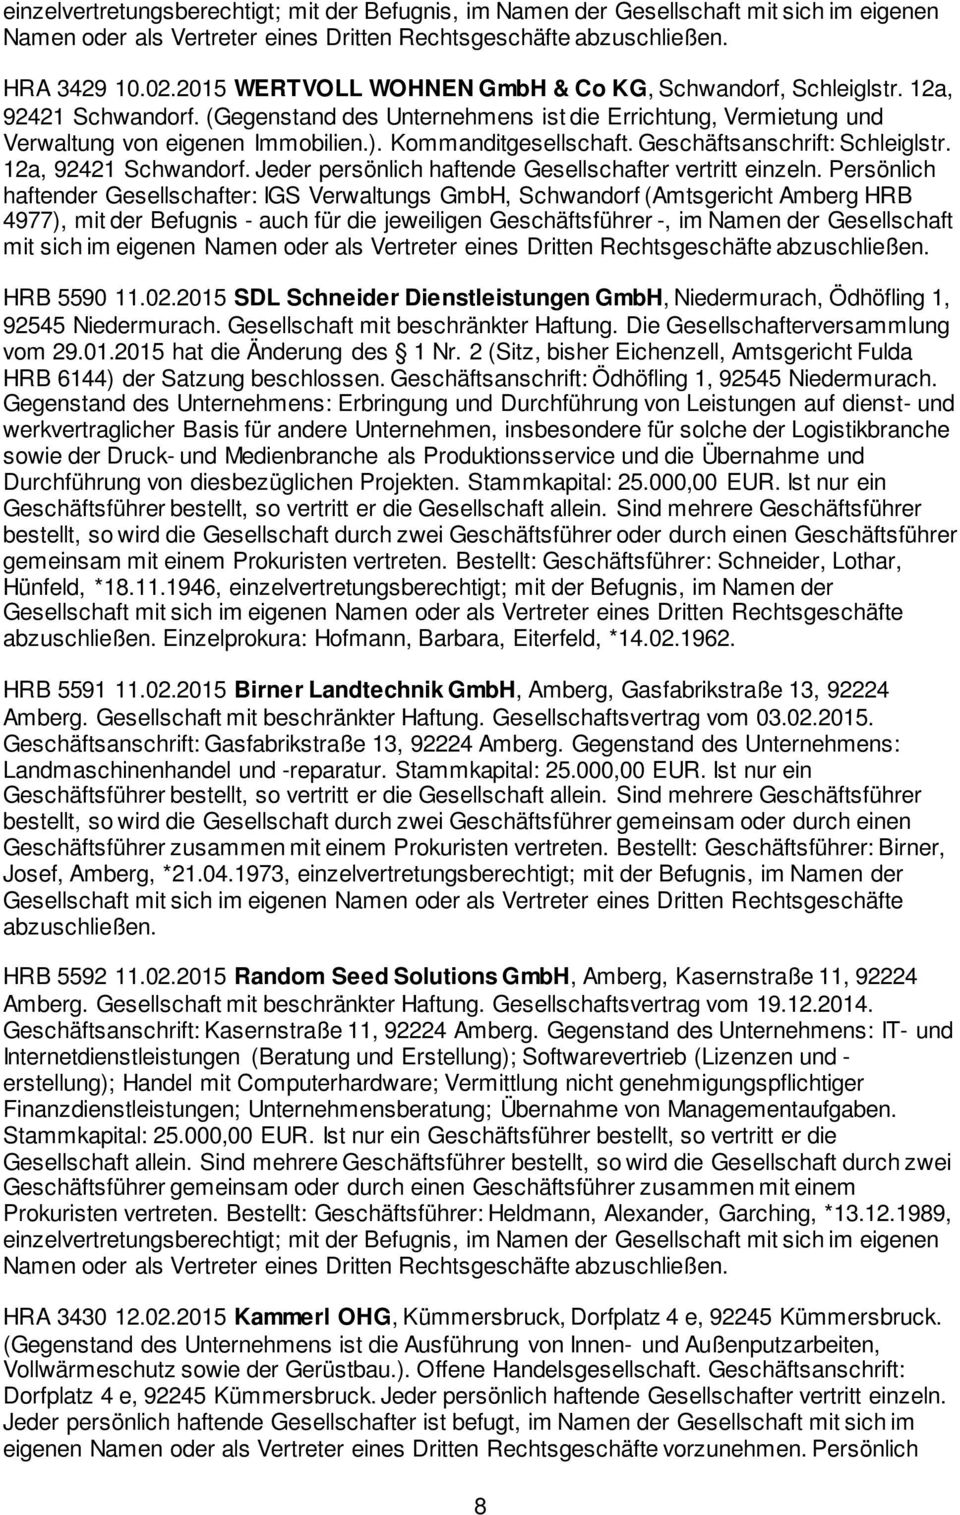 Persönlich haftender Gesellschafter: IGS Verwaltungs GmbH, Schwandorf (Amtsgericht Amberg HRB 4977), mit der Befugnis - auch für die jeweiligen Geschäftsführer -, im Namen der Gesellschaft mit sich